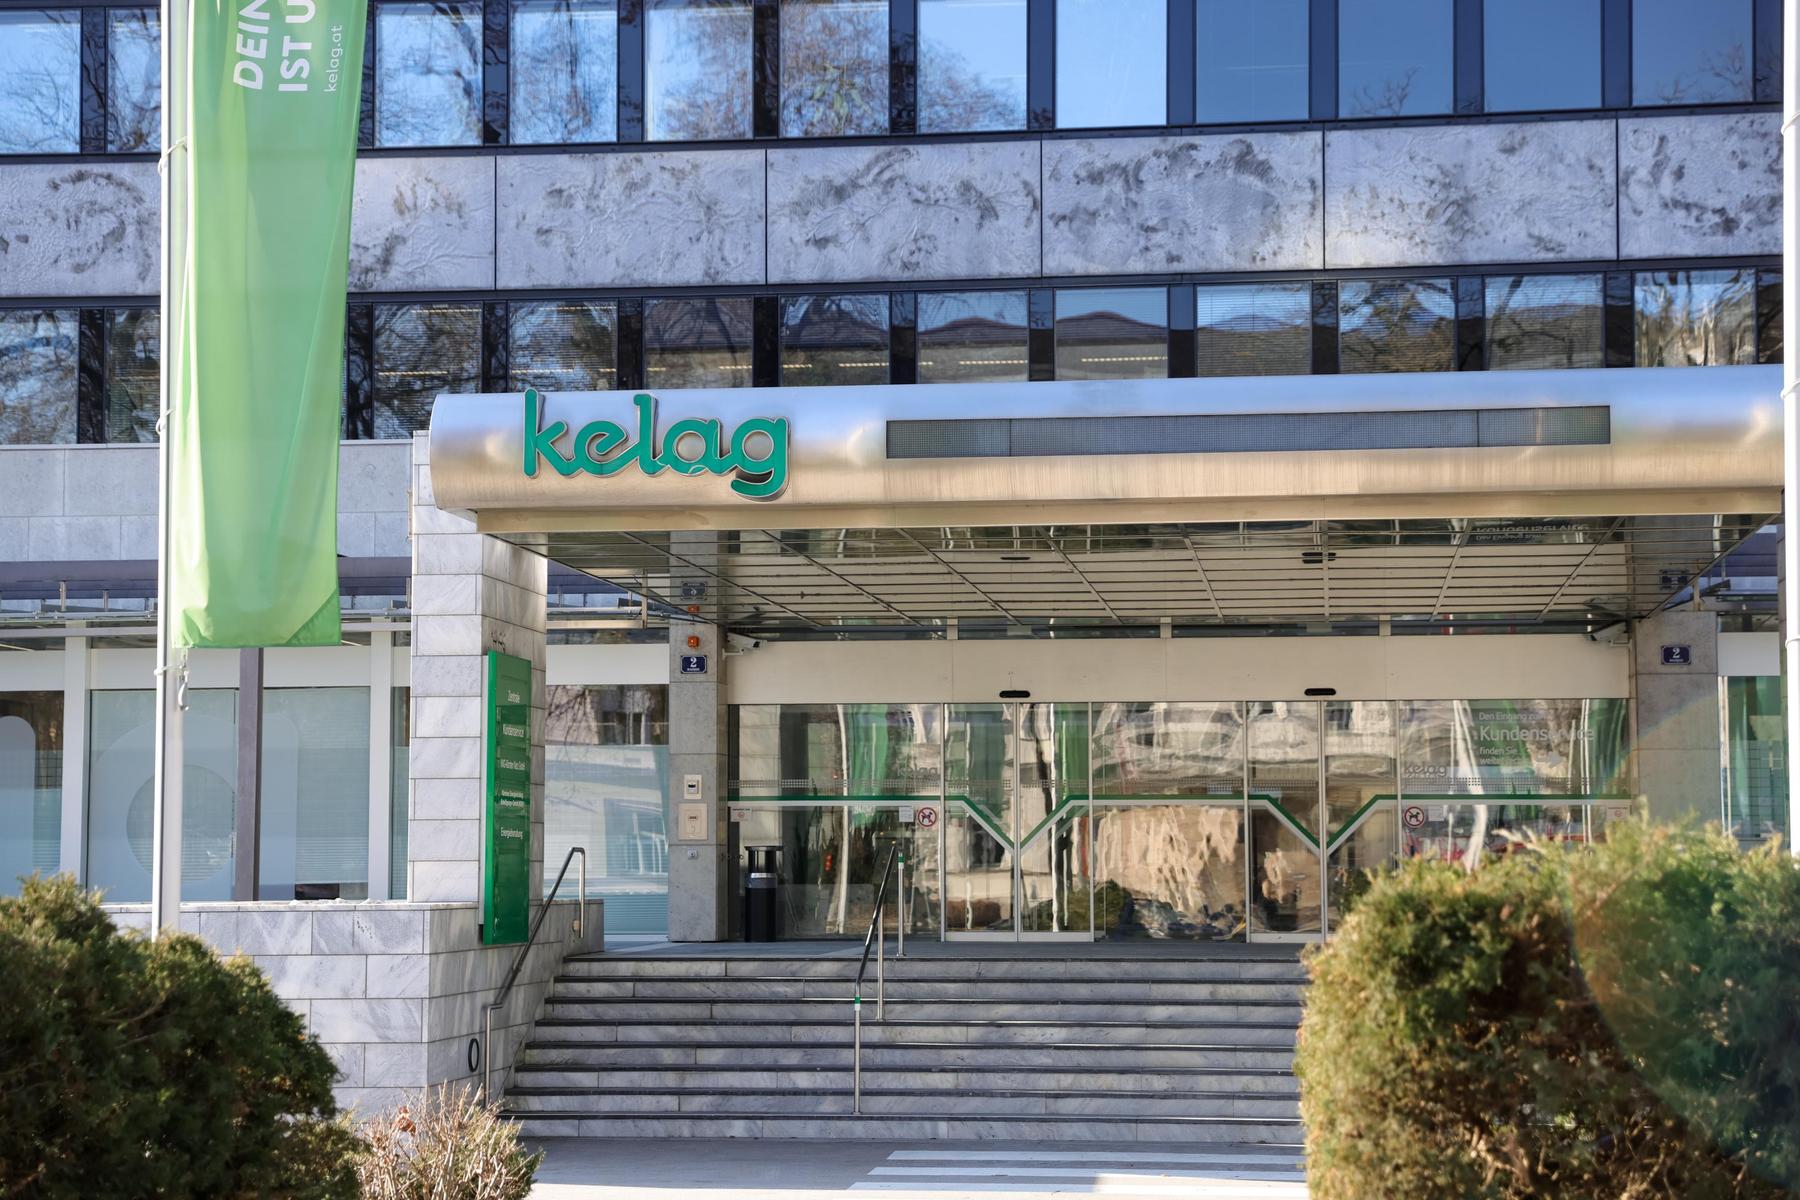 Am Freitag beschlossen: Kelag schüttet 230 Millionen Euro an ihre Eigentümer aus